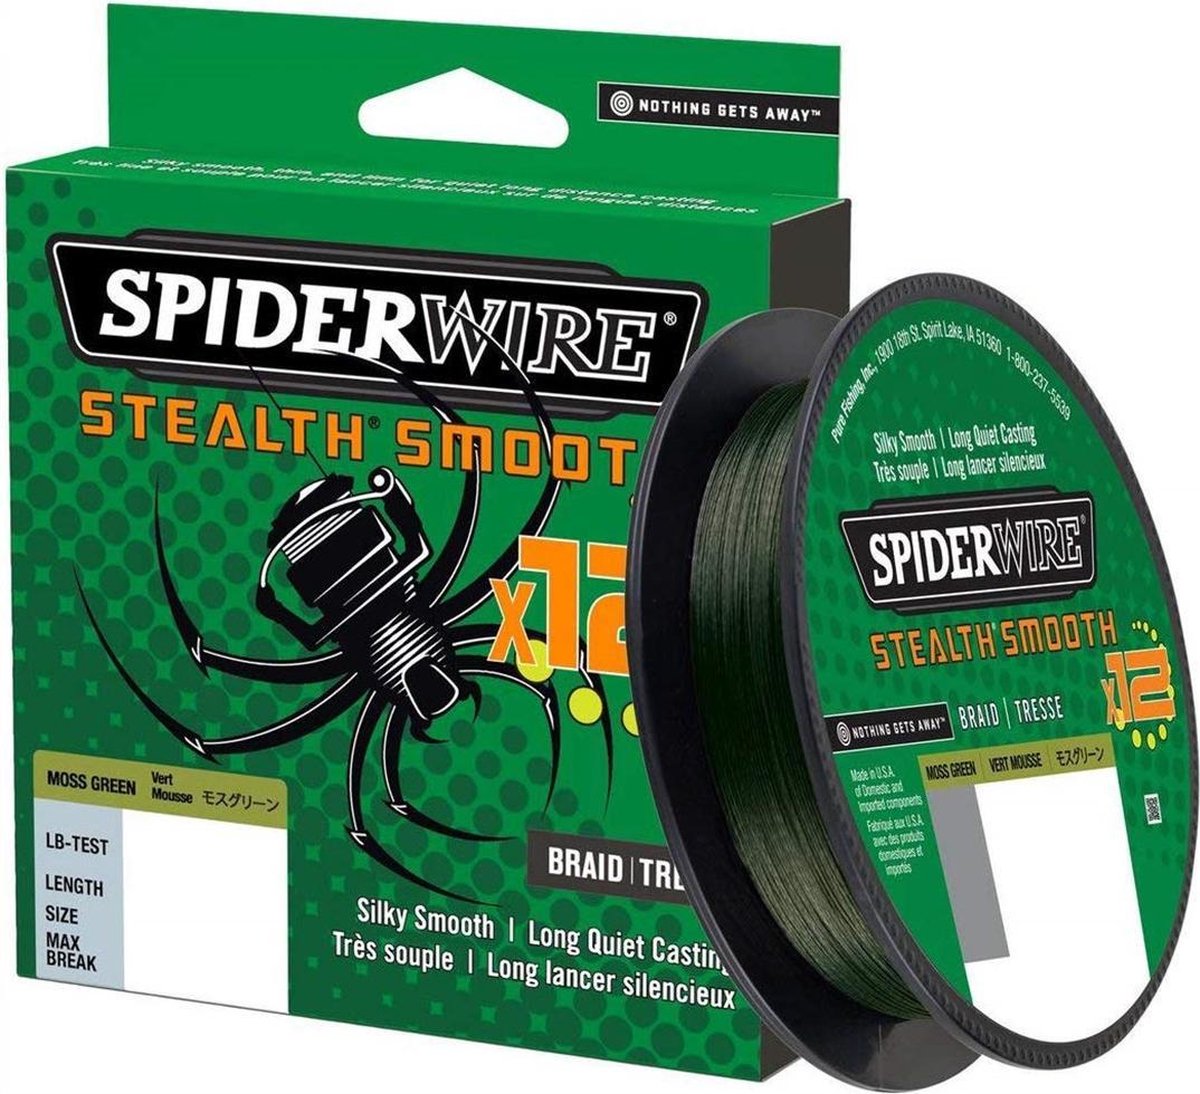 SpiderWire Stealth Smooth 12 Braid -Moss Green - 0.06mm - 5.4kg - 150m - Spiderwire